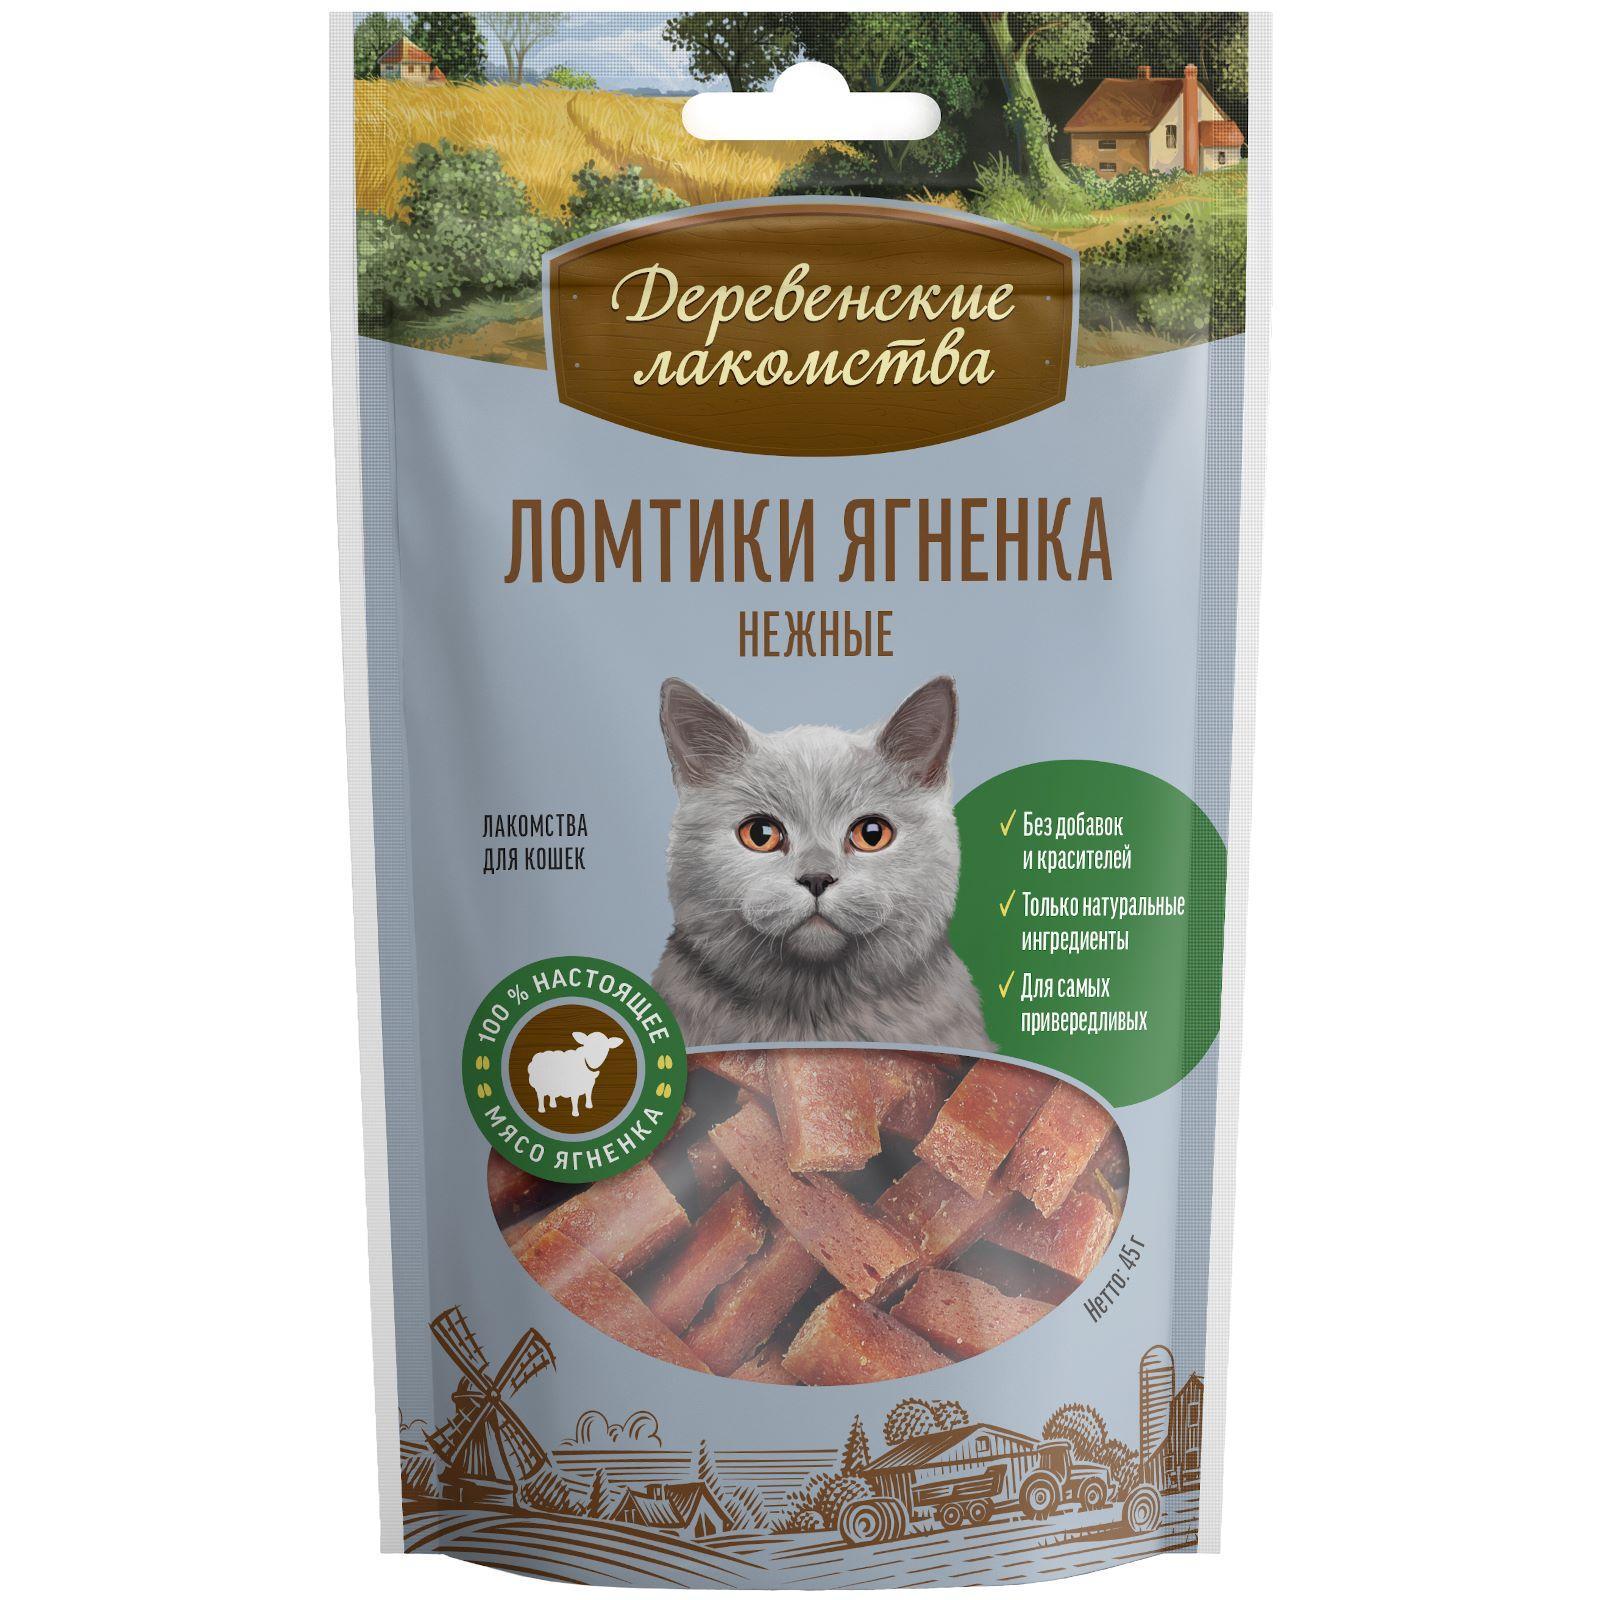 Ломтики ягненка нежные для кошек (100% мясо). 45 г